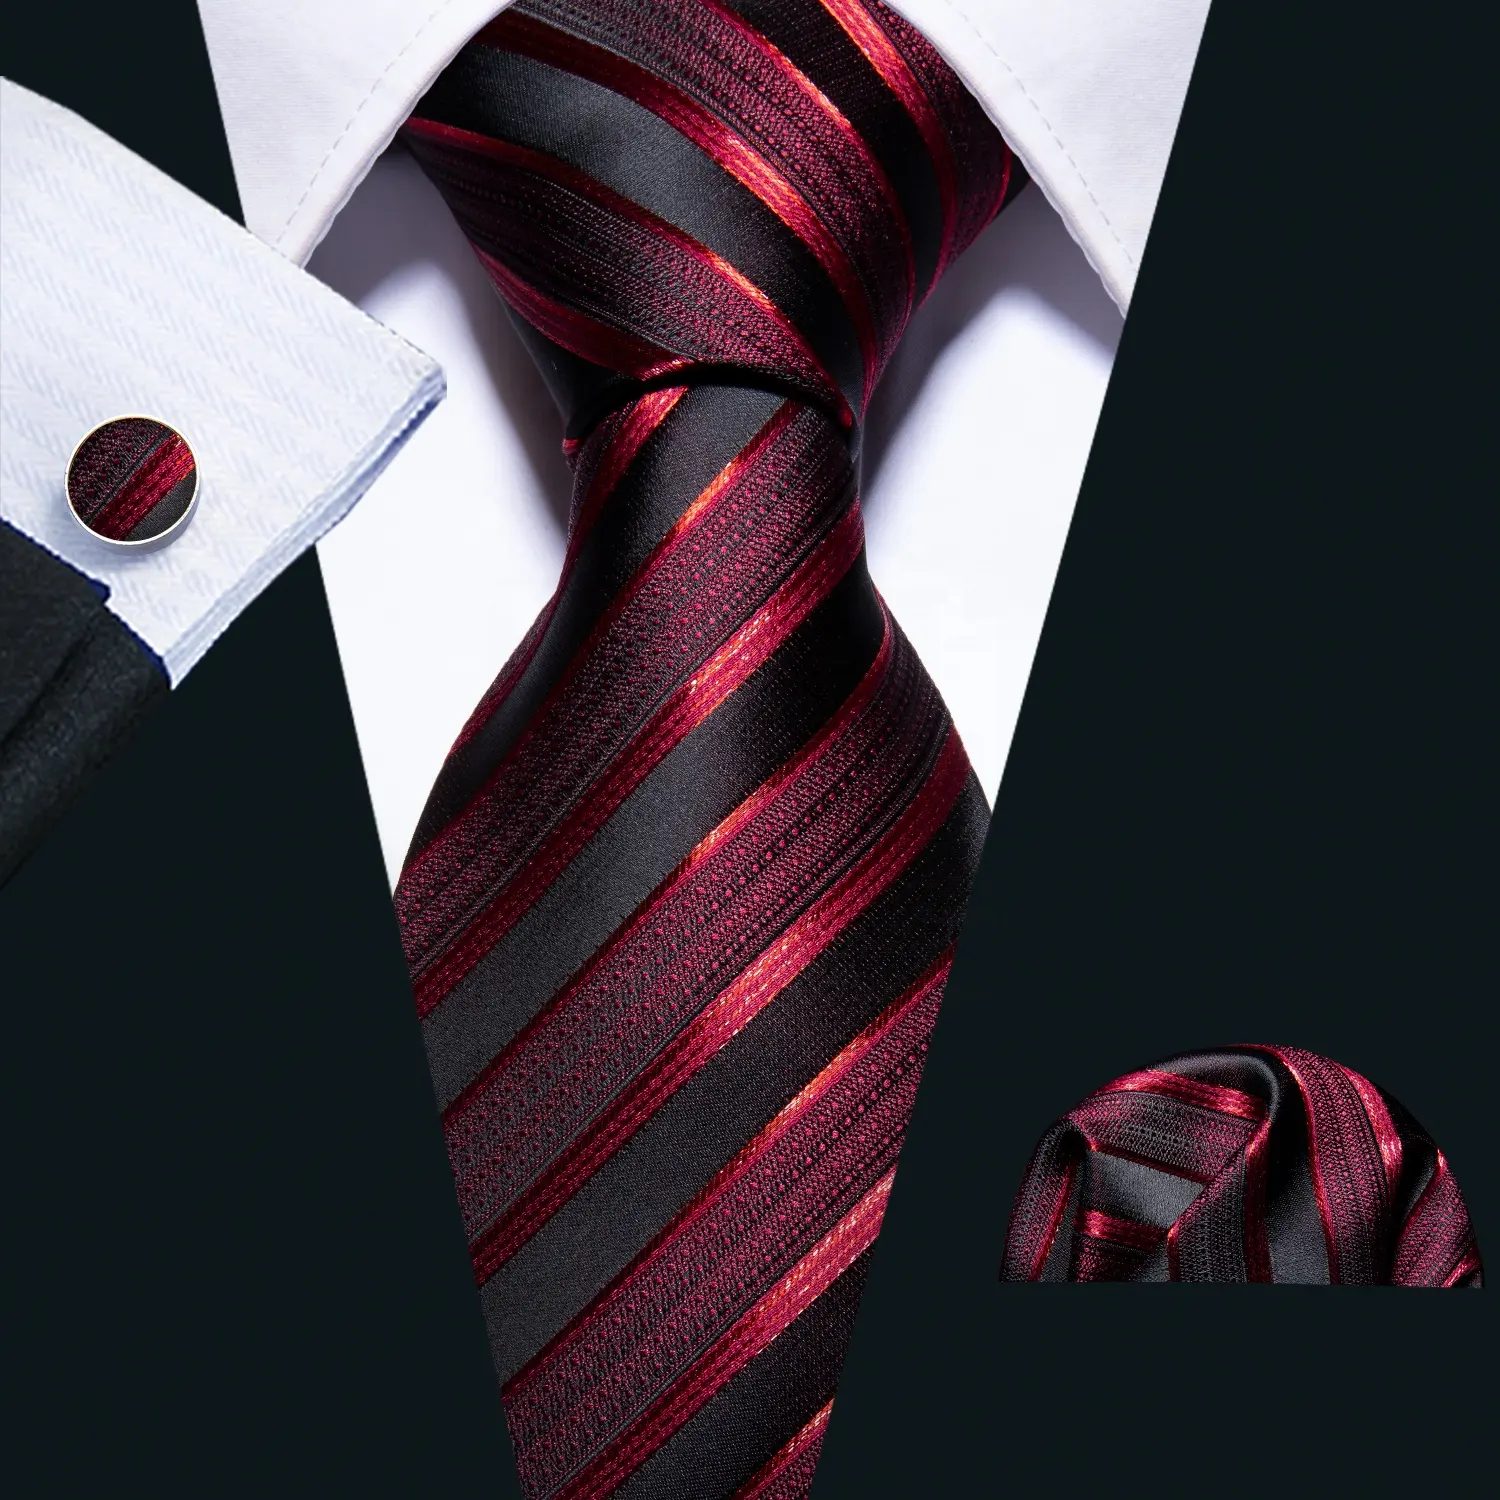 Commercio All'ingrosso su ordinazione di Modo di Affari di Nozze Cravatta A Strisce Rosso Degli Uomini di Seta Cravatte Cravatta Set Fazzoletto Gemelli